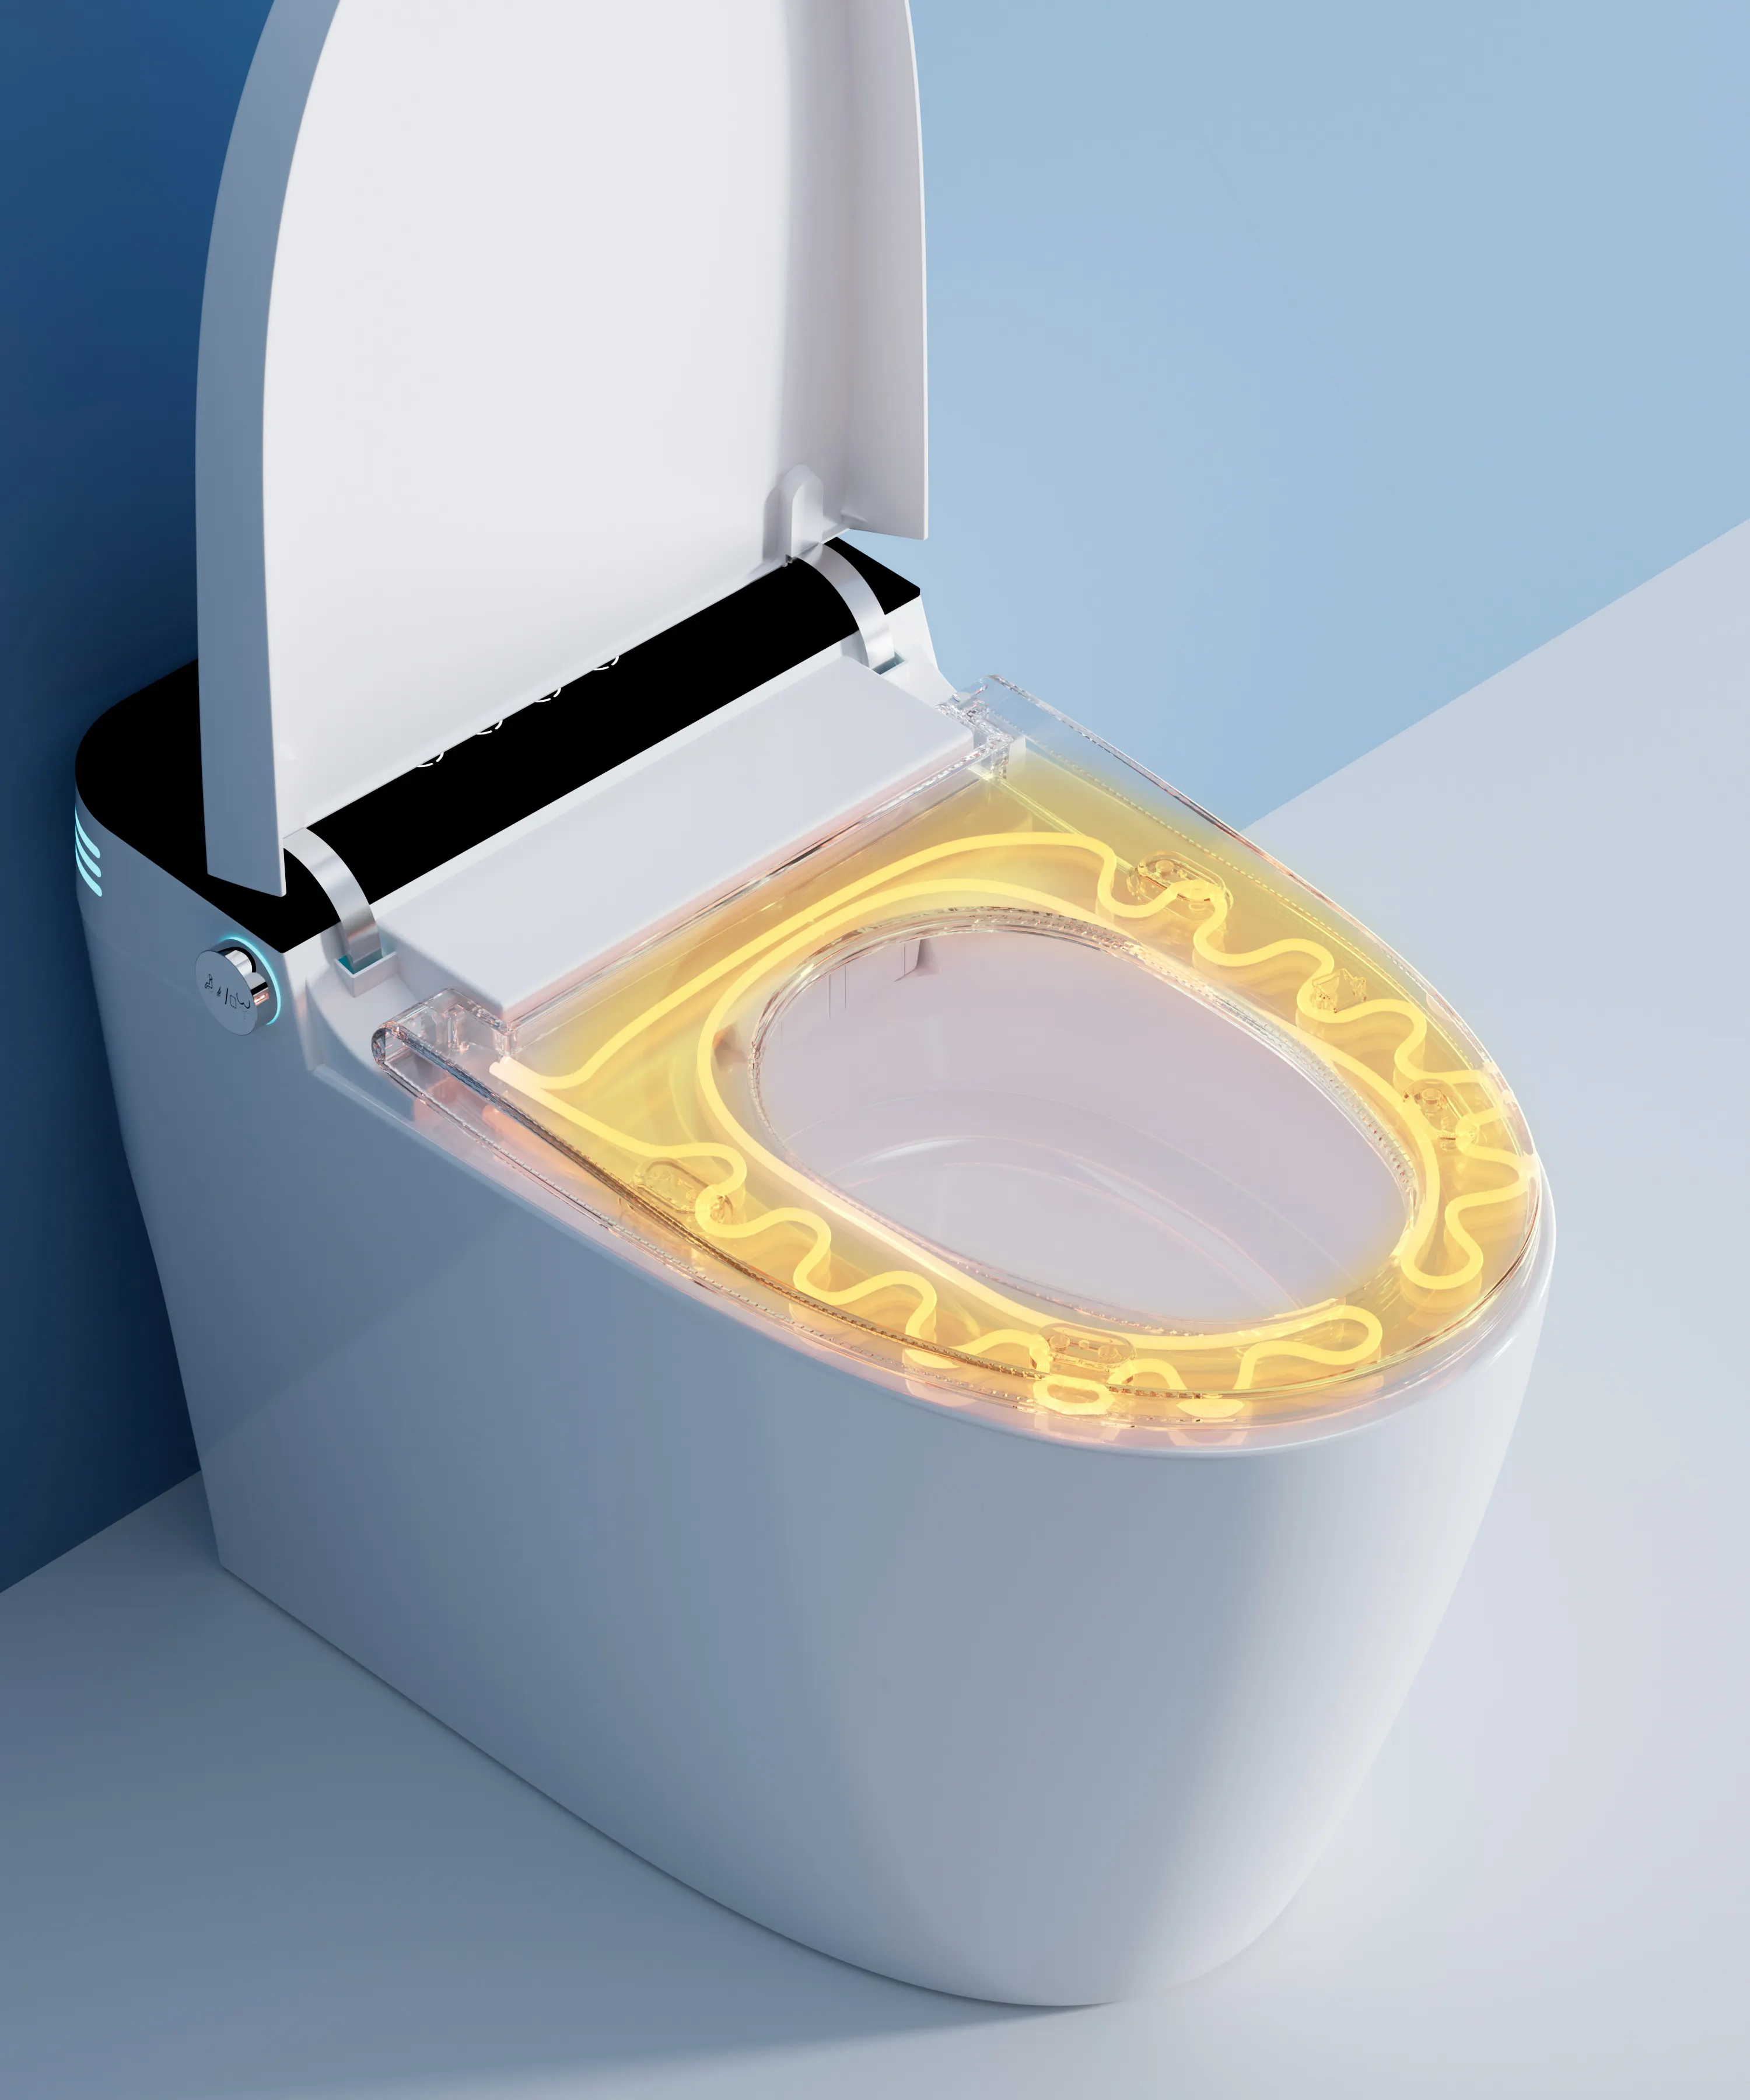 Offre Spéciale nouveau style maison wc toilette intelligente capteur d'ouverture automatique chasse d'eau salle de bain fermeture automatique toilette intelligente